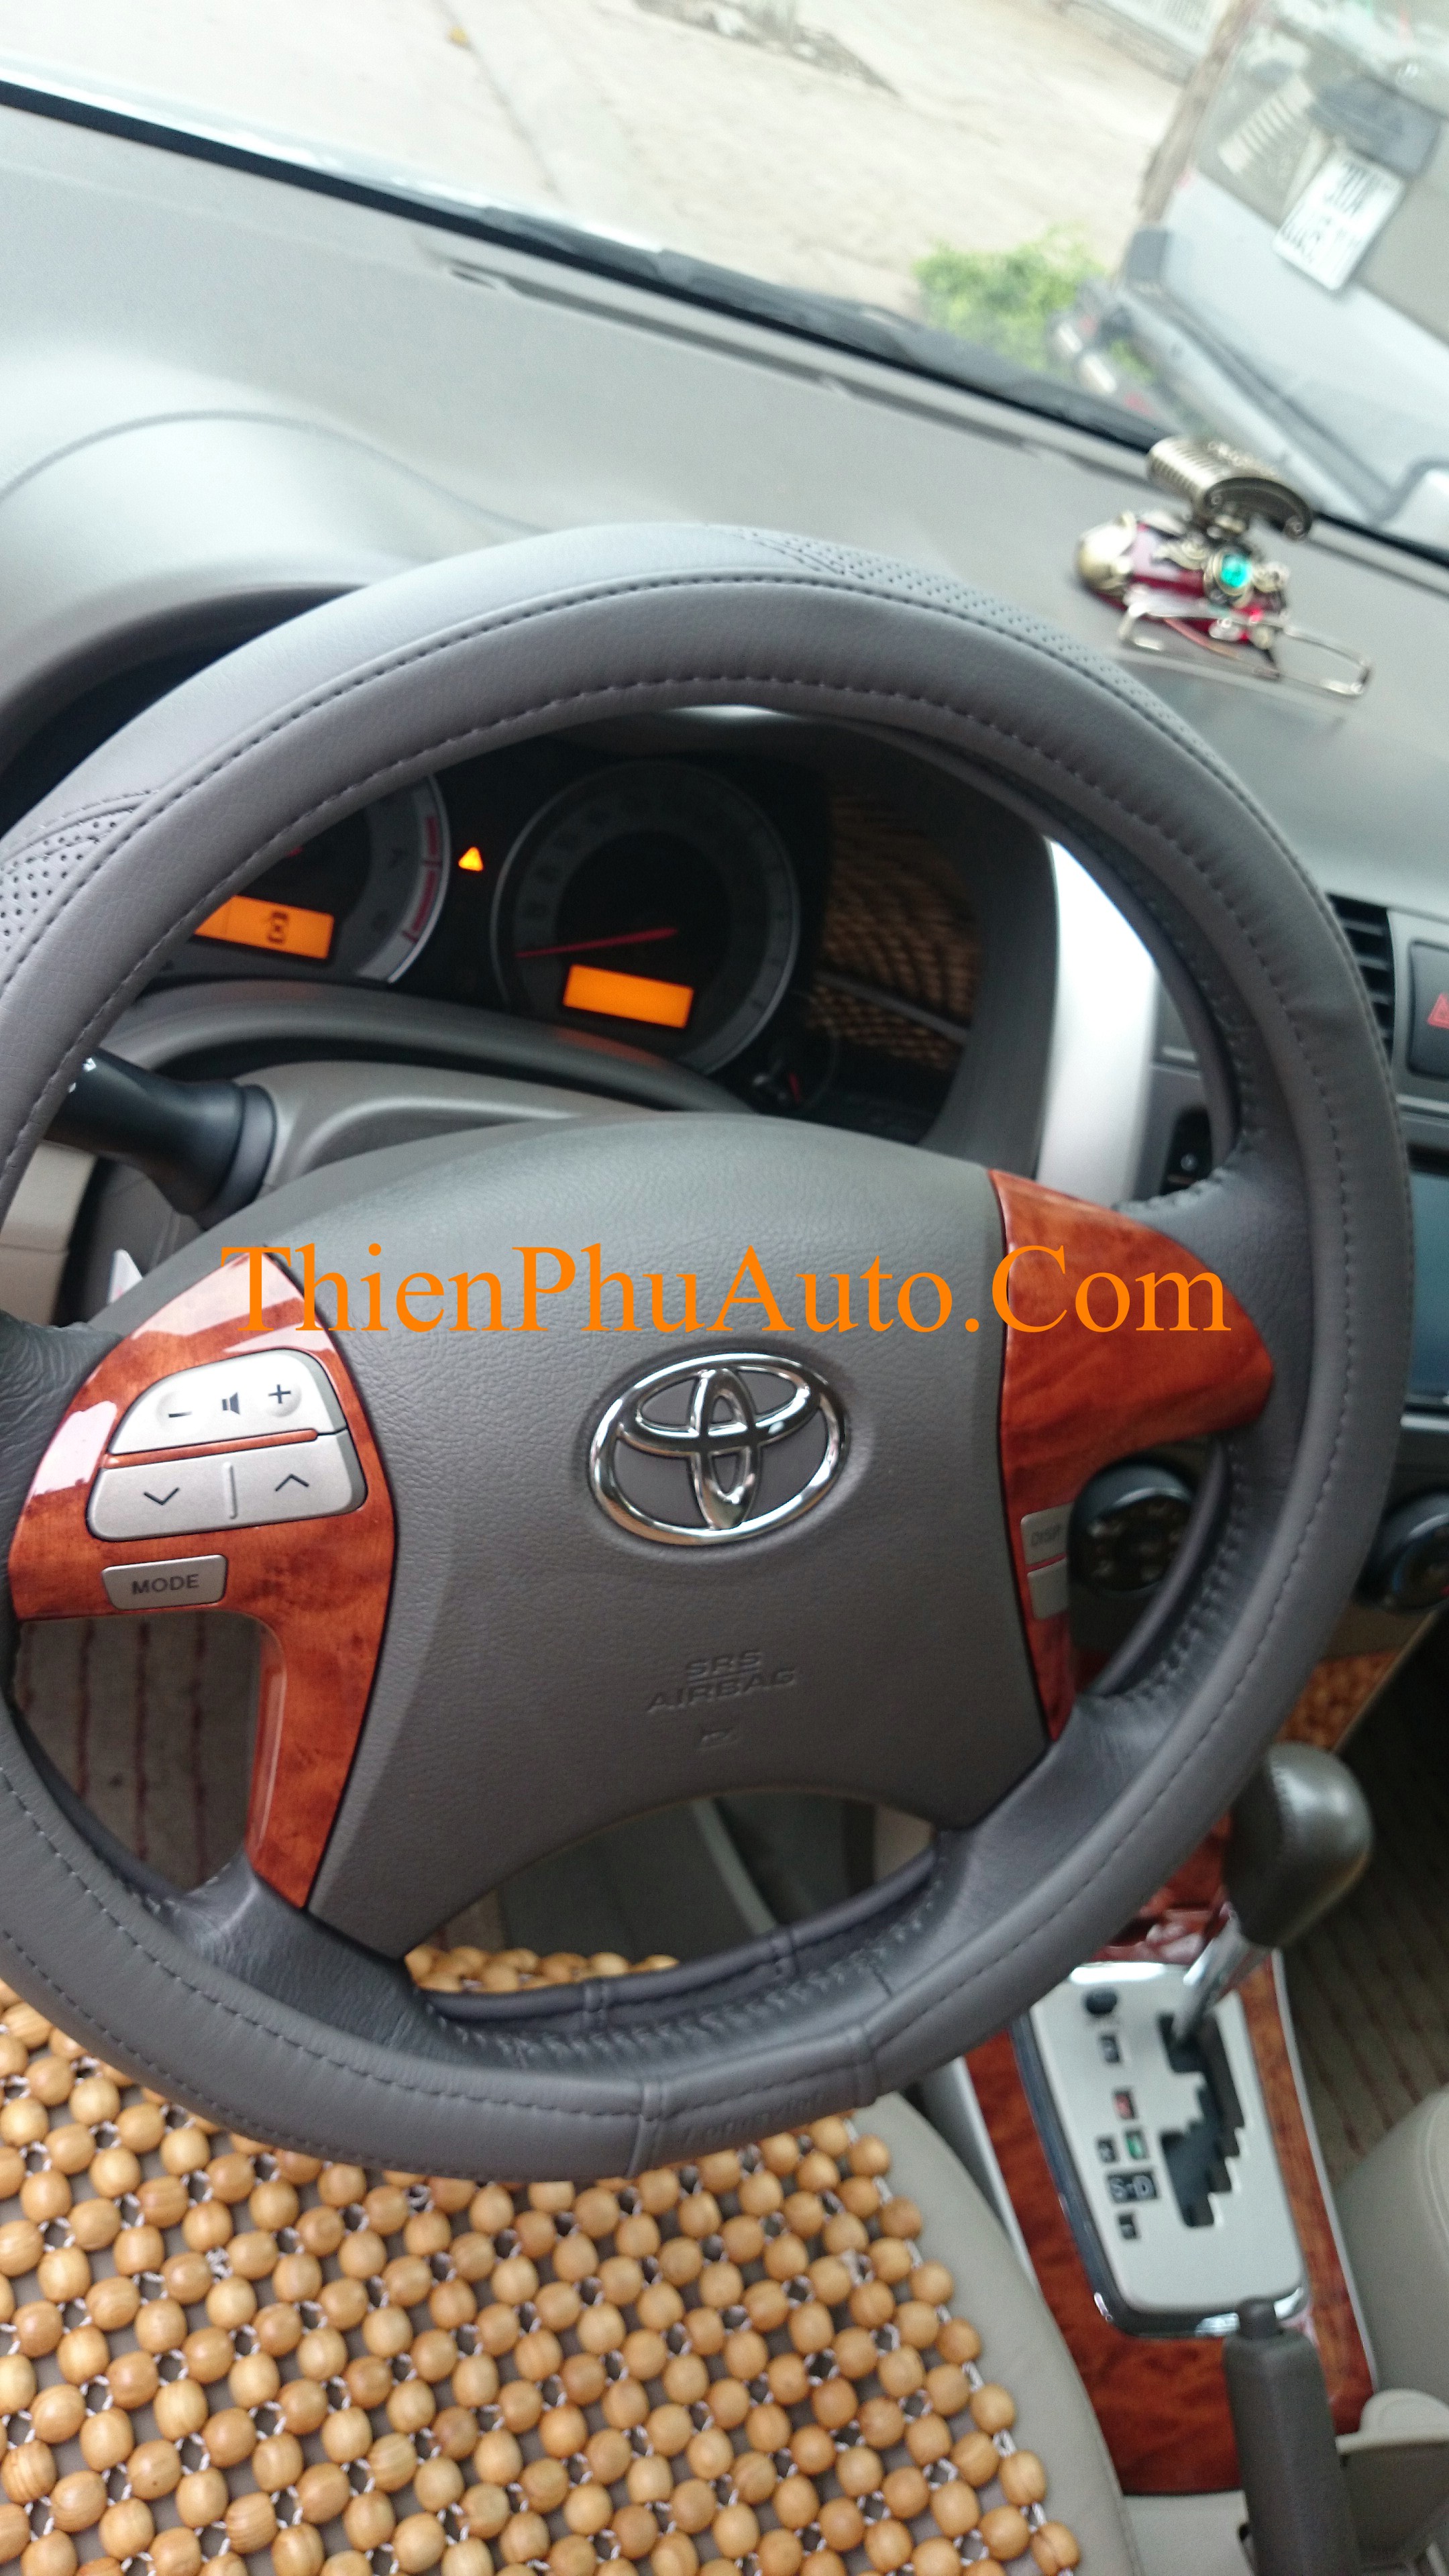 Ốp vân gỗ tay điều khiển vô lăng ô tô xe Toyota Altis Corolla